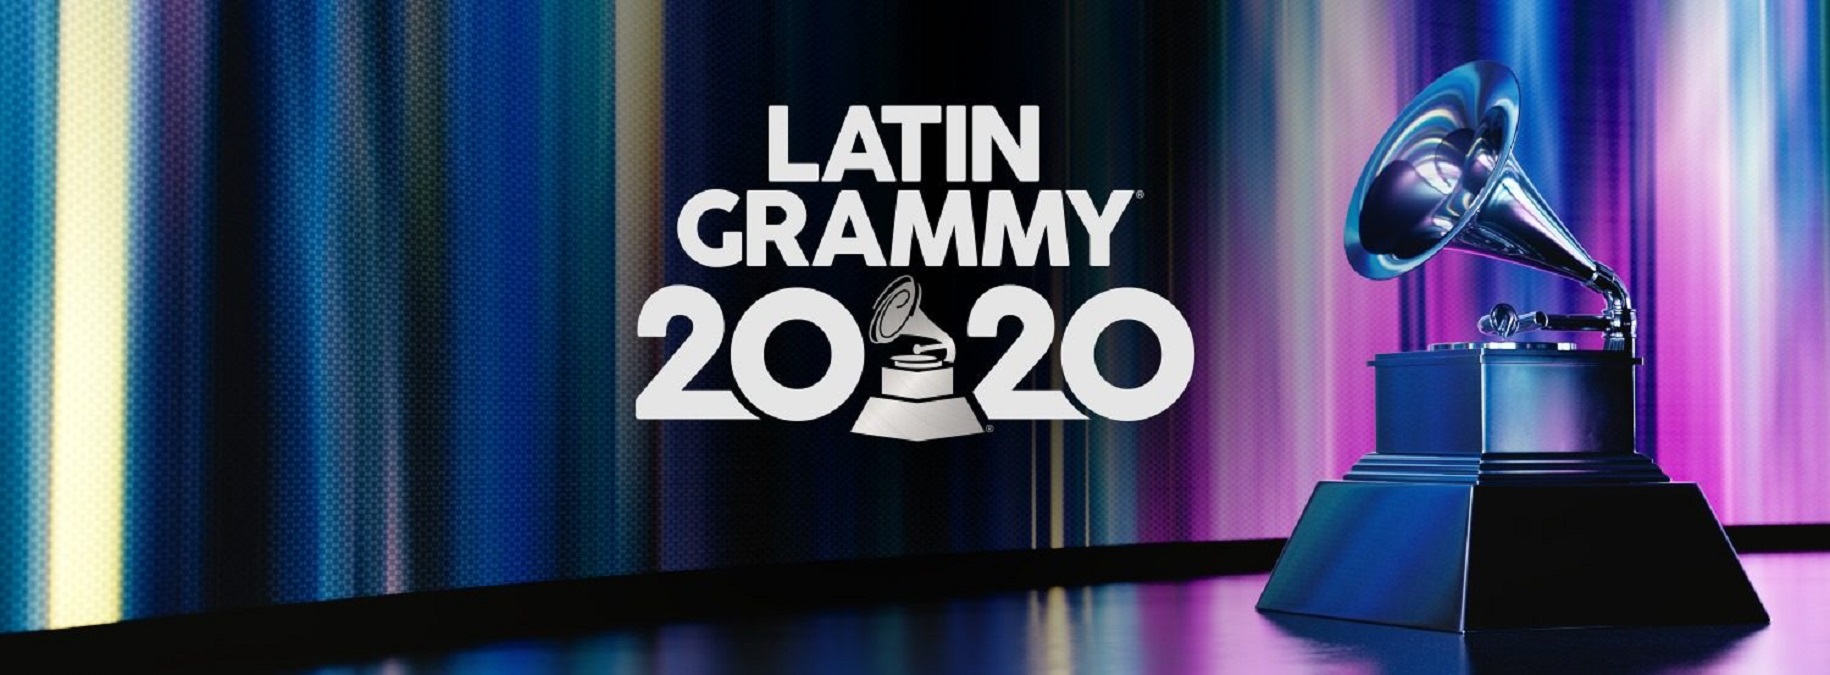 Estos son los ganadores de los Latin Grammy 2020 Cubatel